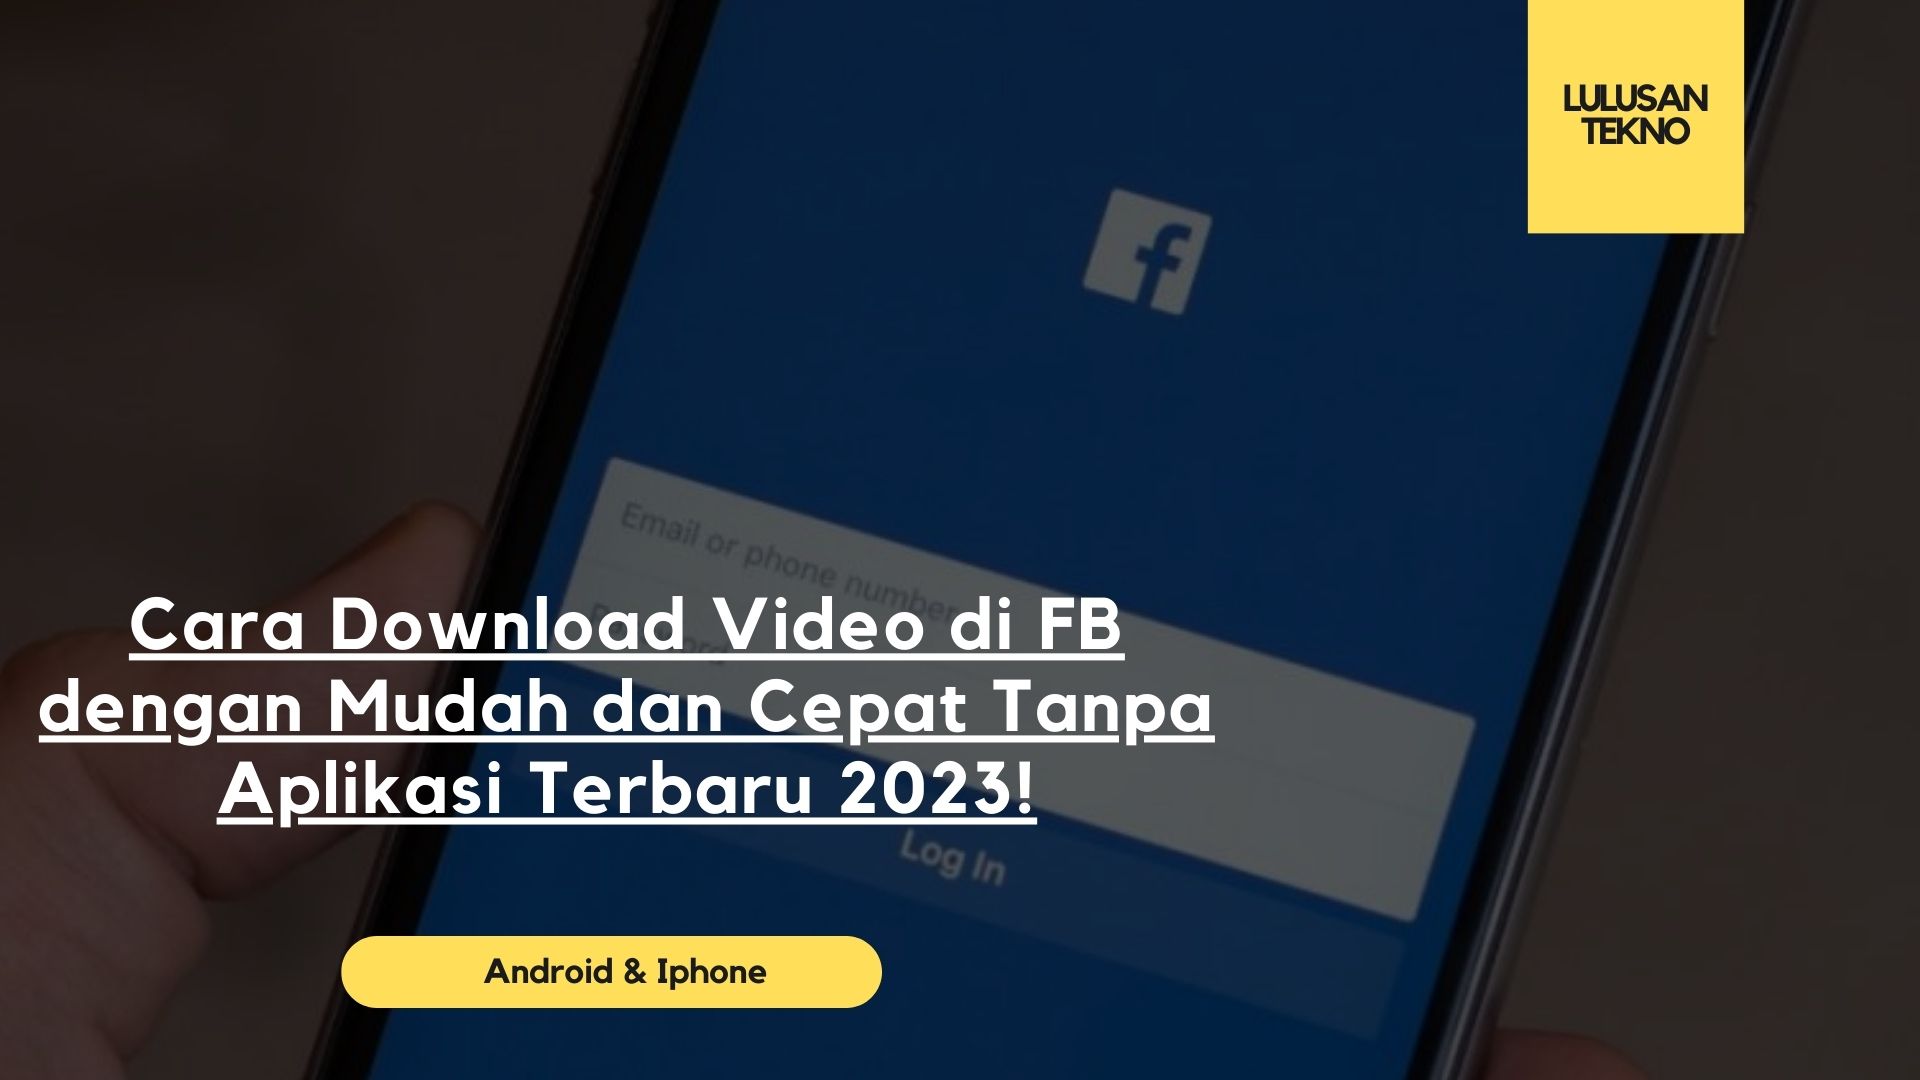 Cara Download Video di FB dengan Mudah dan Cepat Tanpa Aplikasi Terbaru 2023!